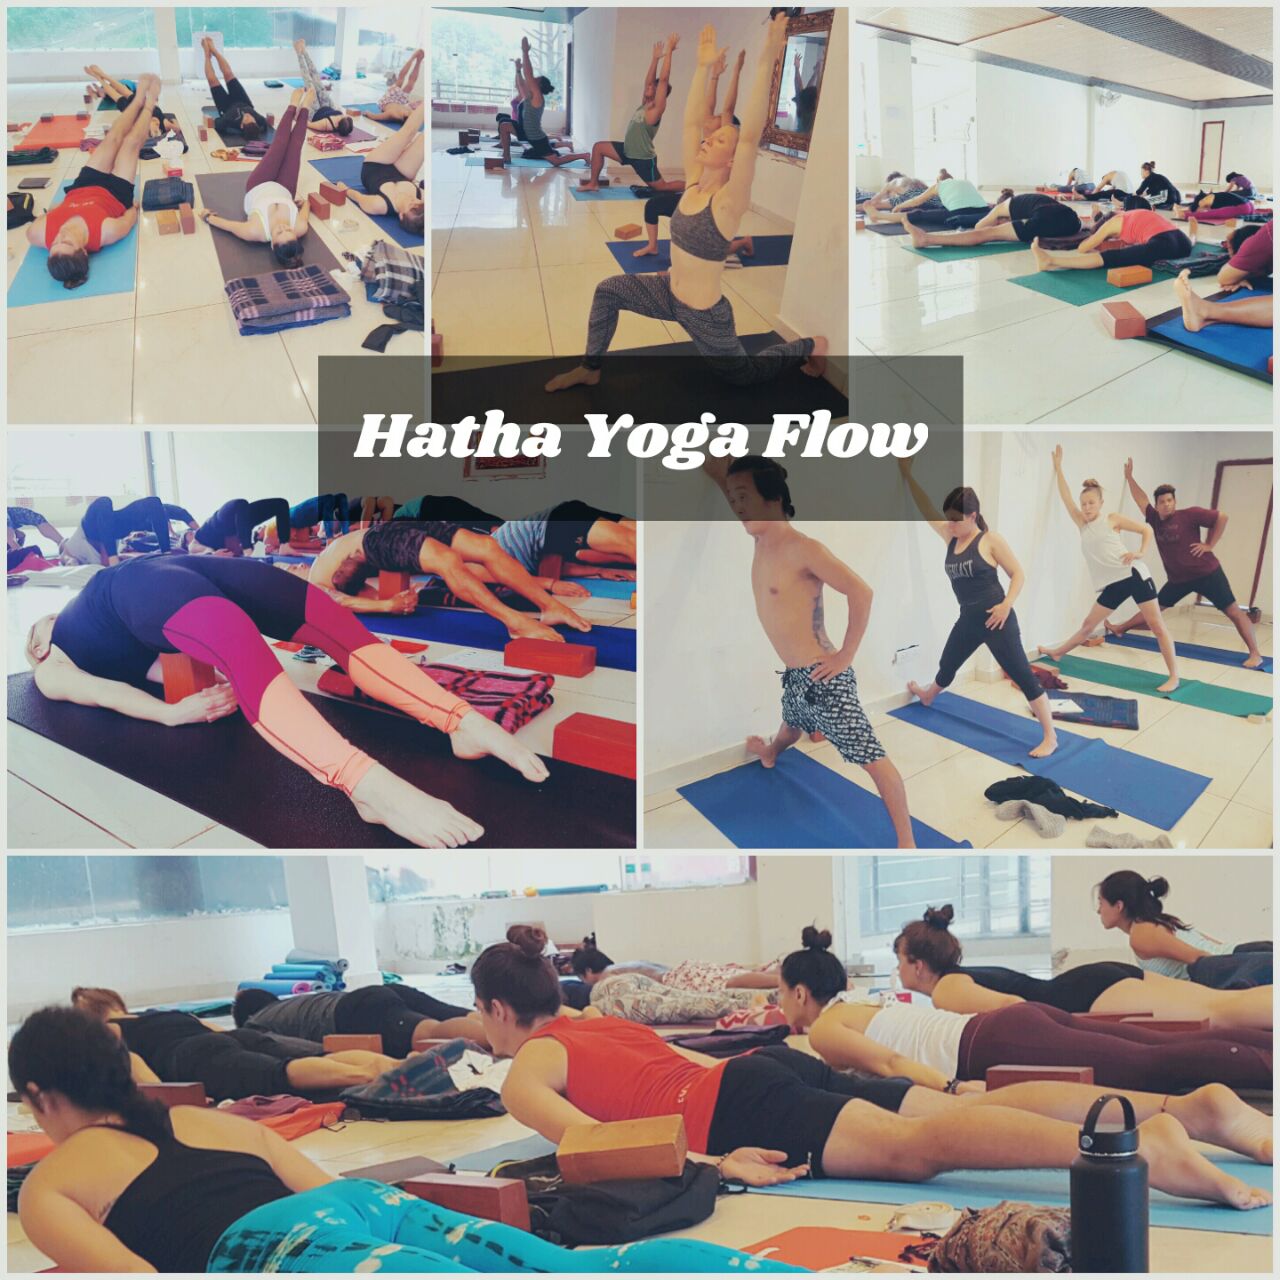 Hatha yoga flow